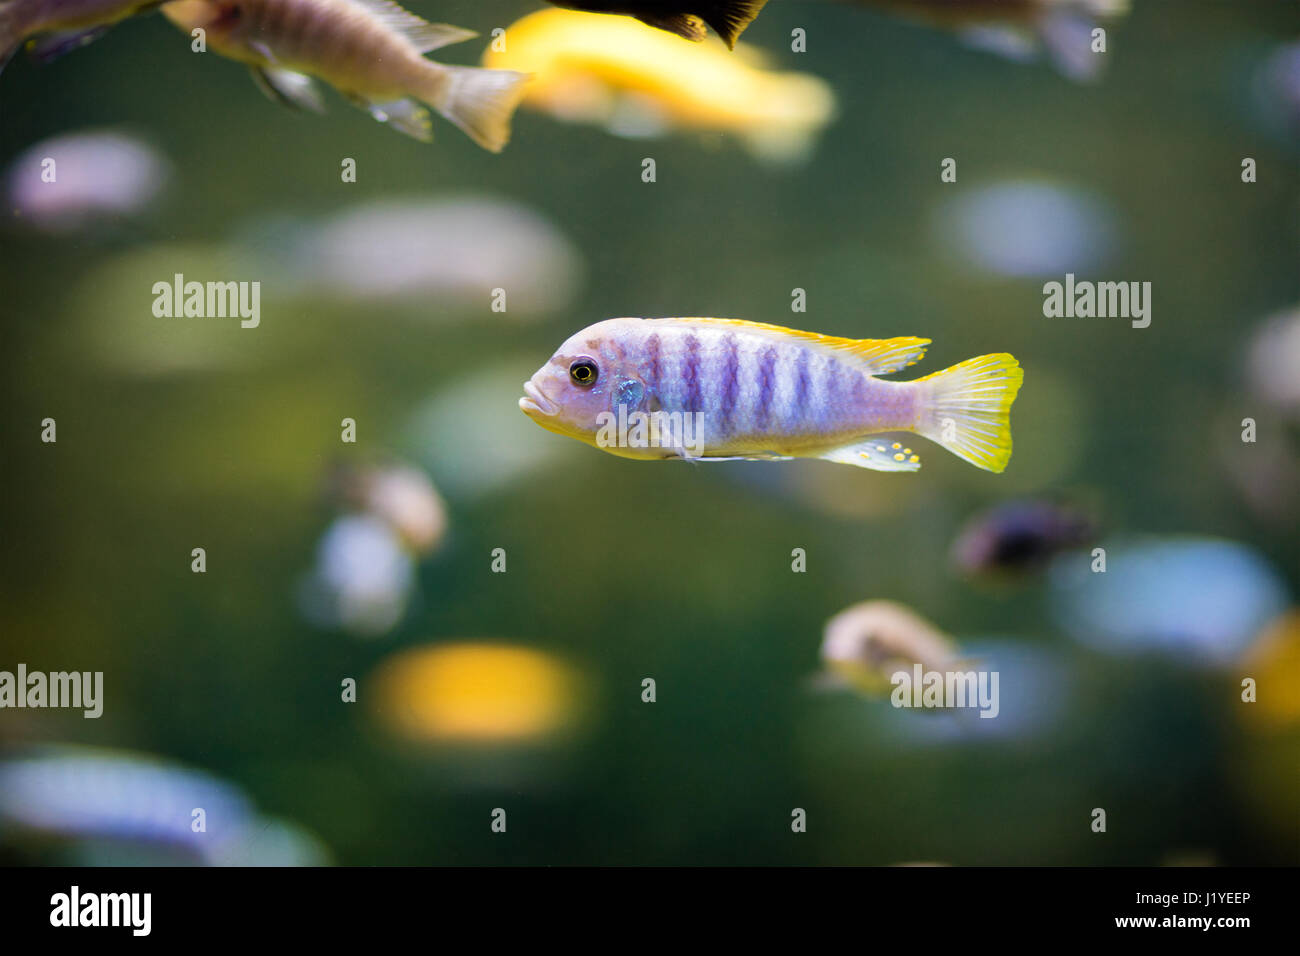 Pseudotropheus fish in the aquarium Stock Photo